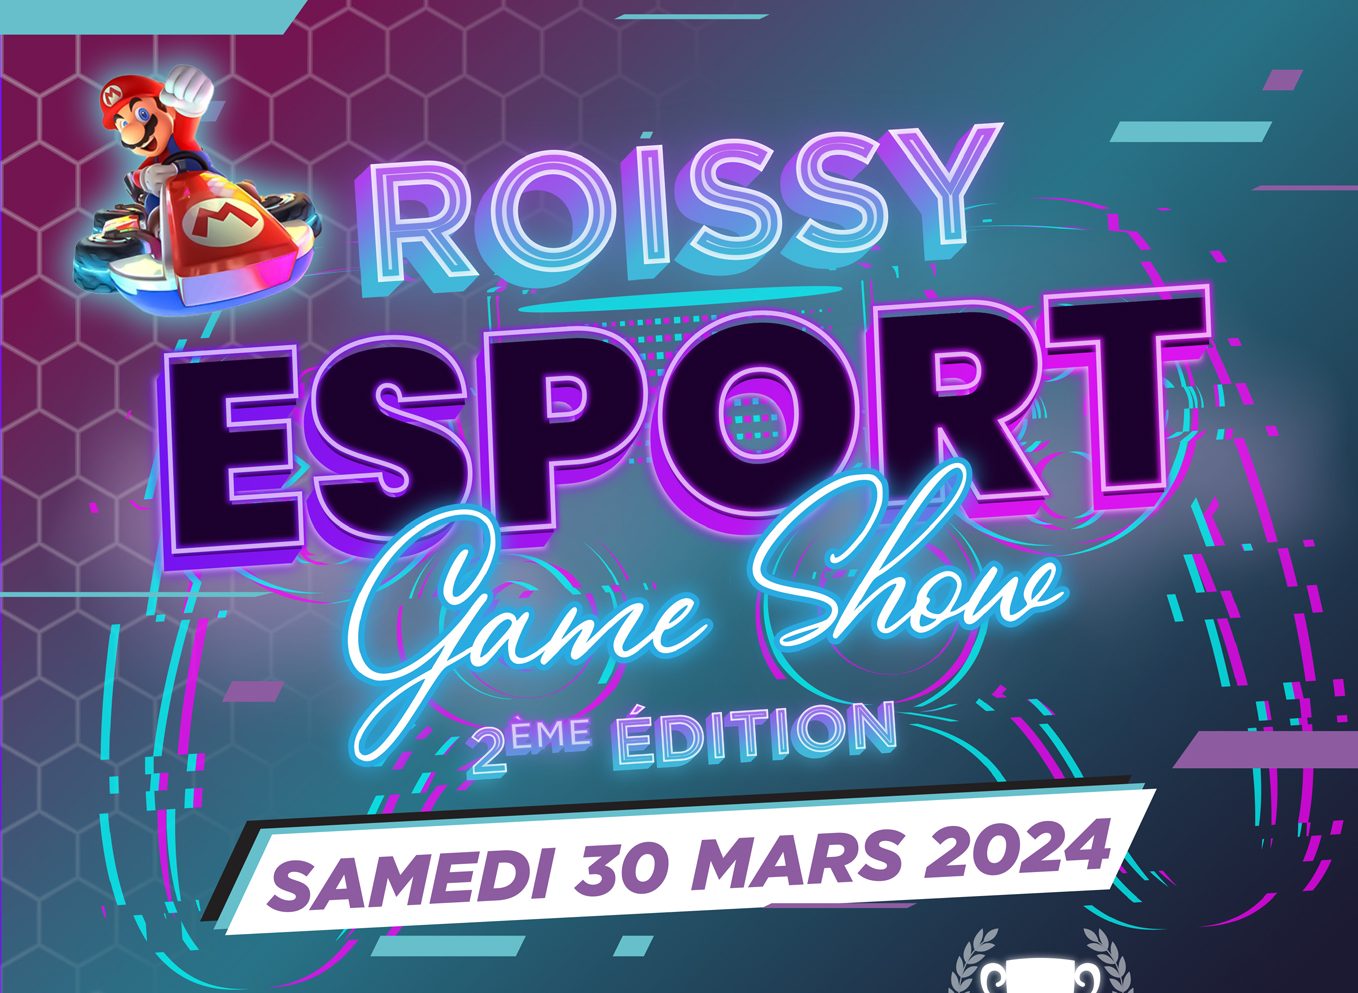 ¡Roissy Esport Game Show regresa el 30 de marzo!